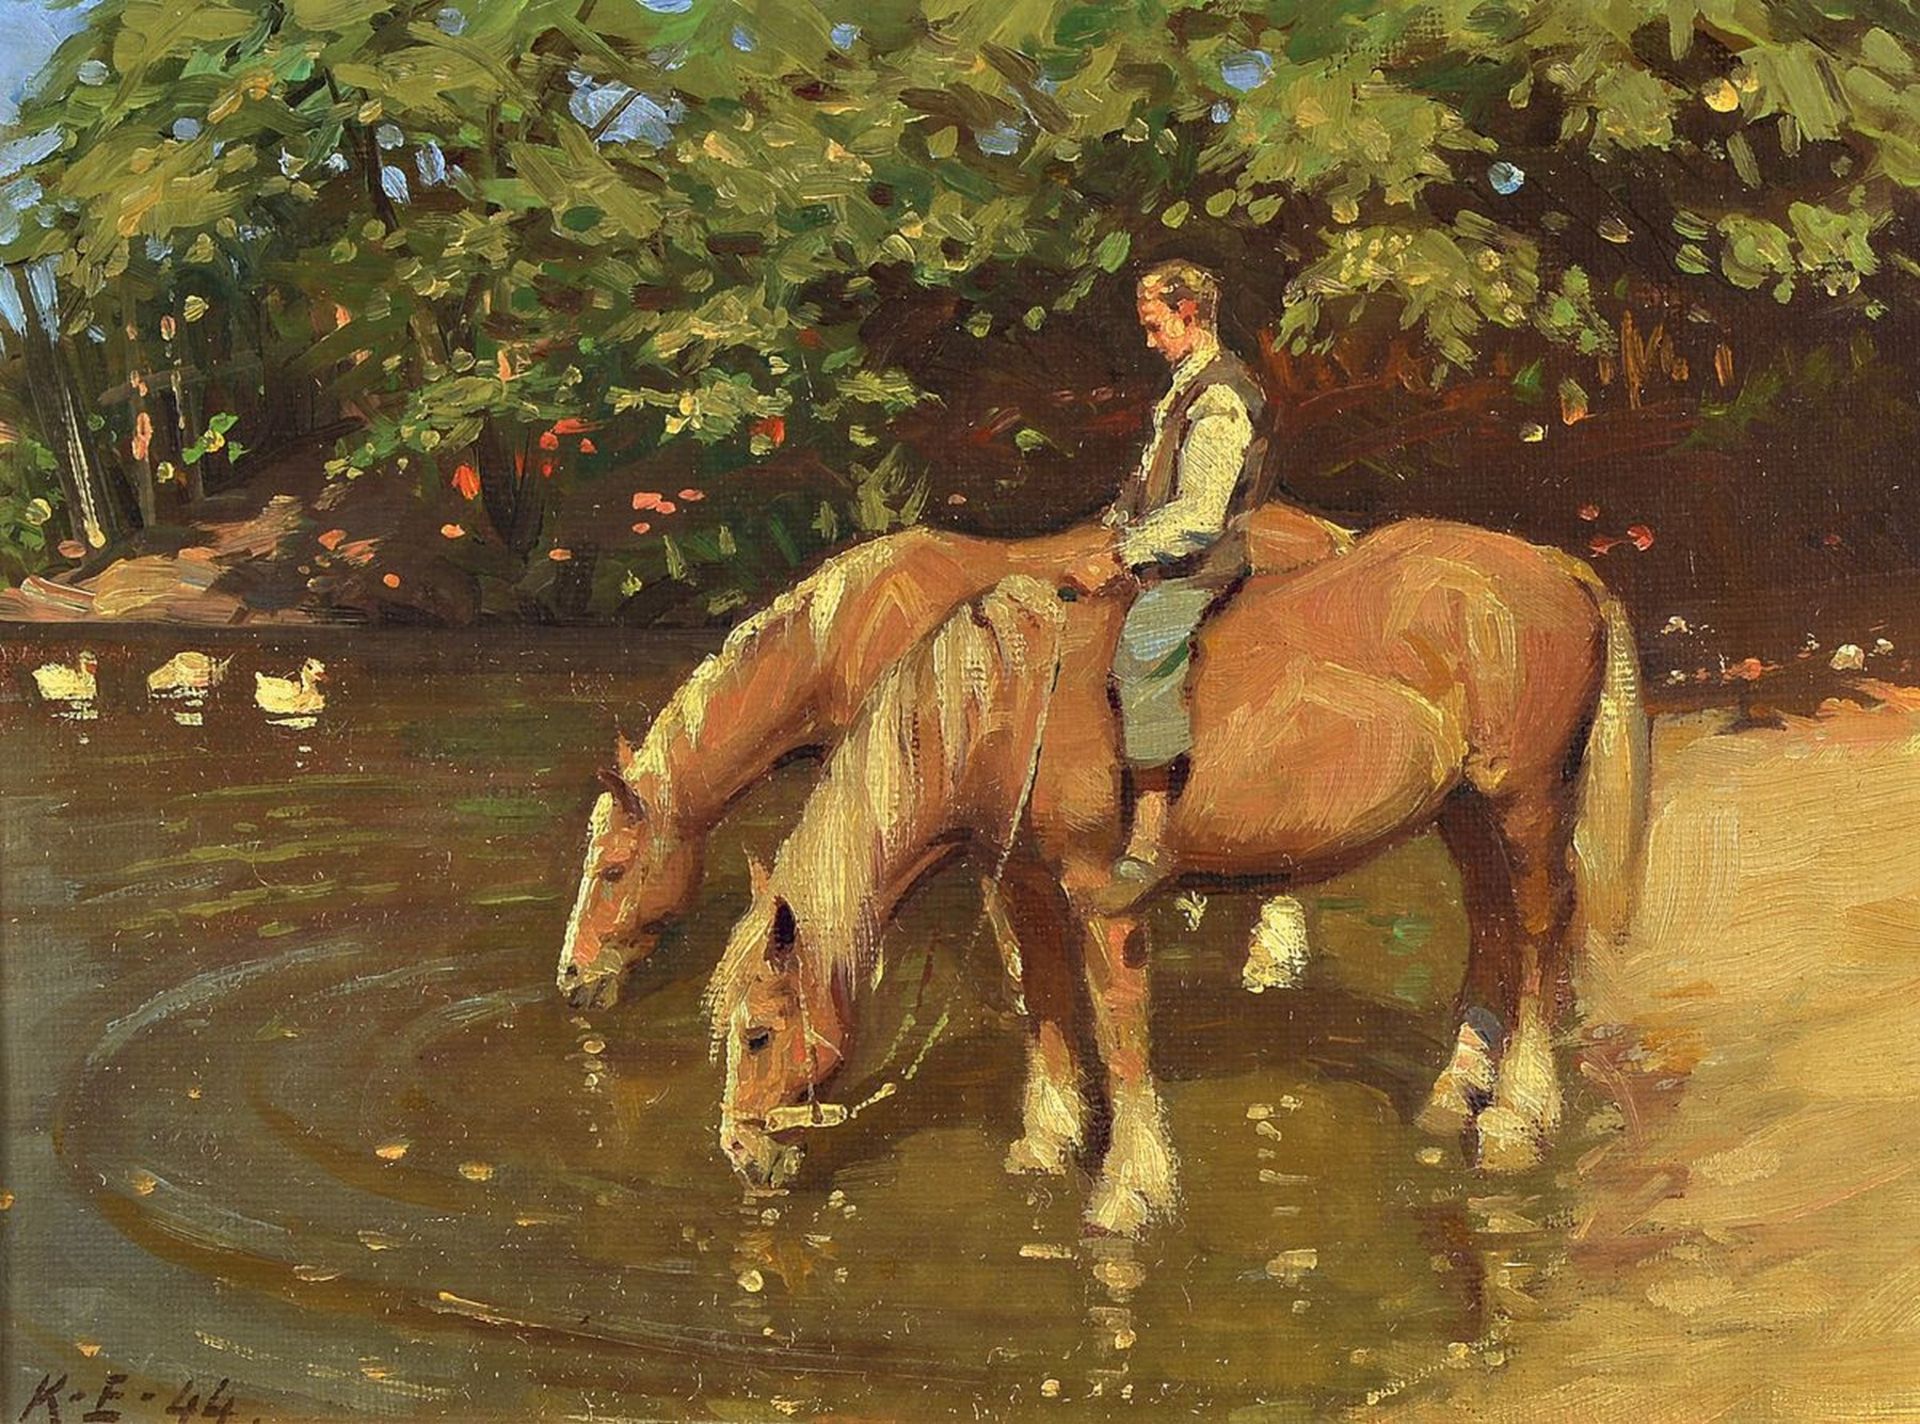 Kaj Ejstrup, 1902 Kopenhagen - 1956, Reiter am Fluss mit